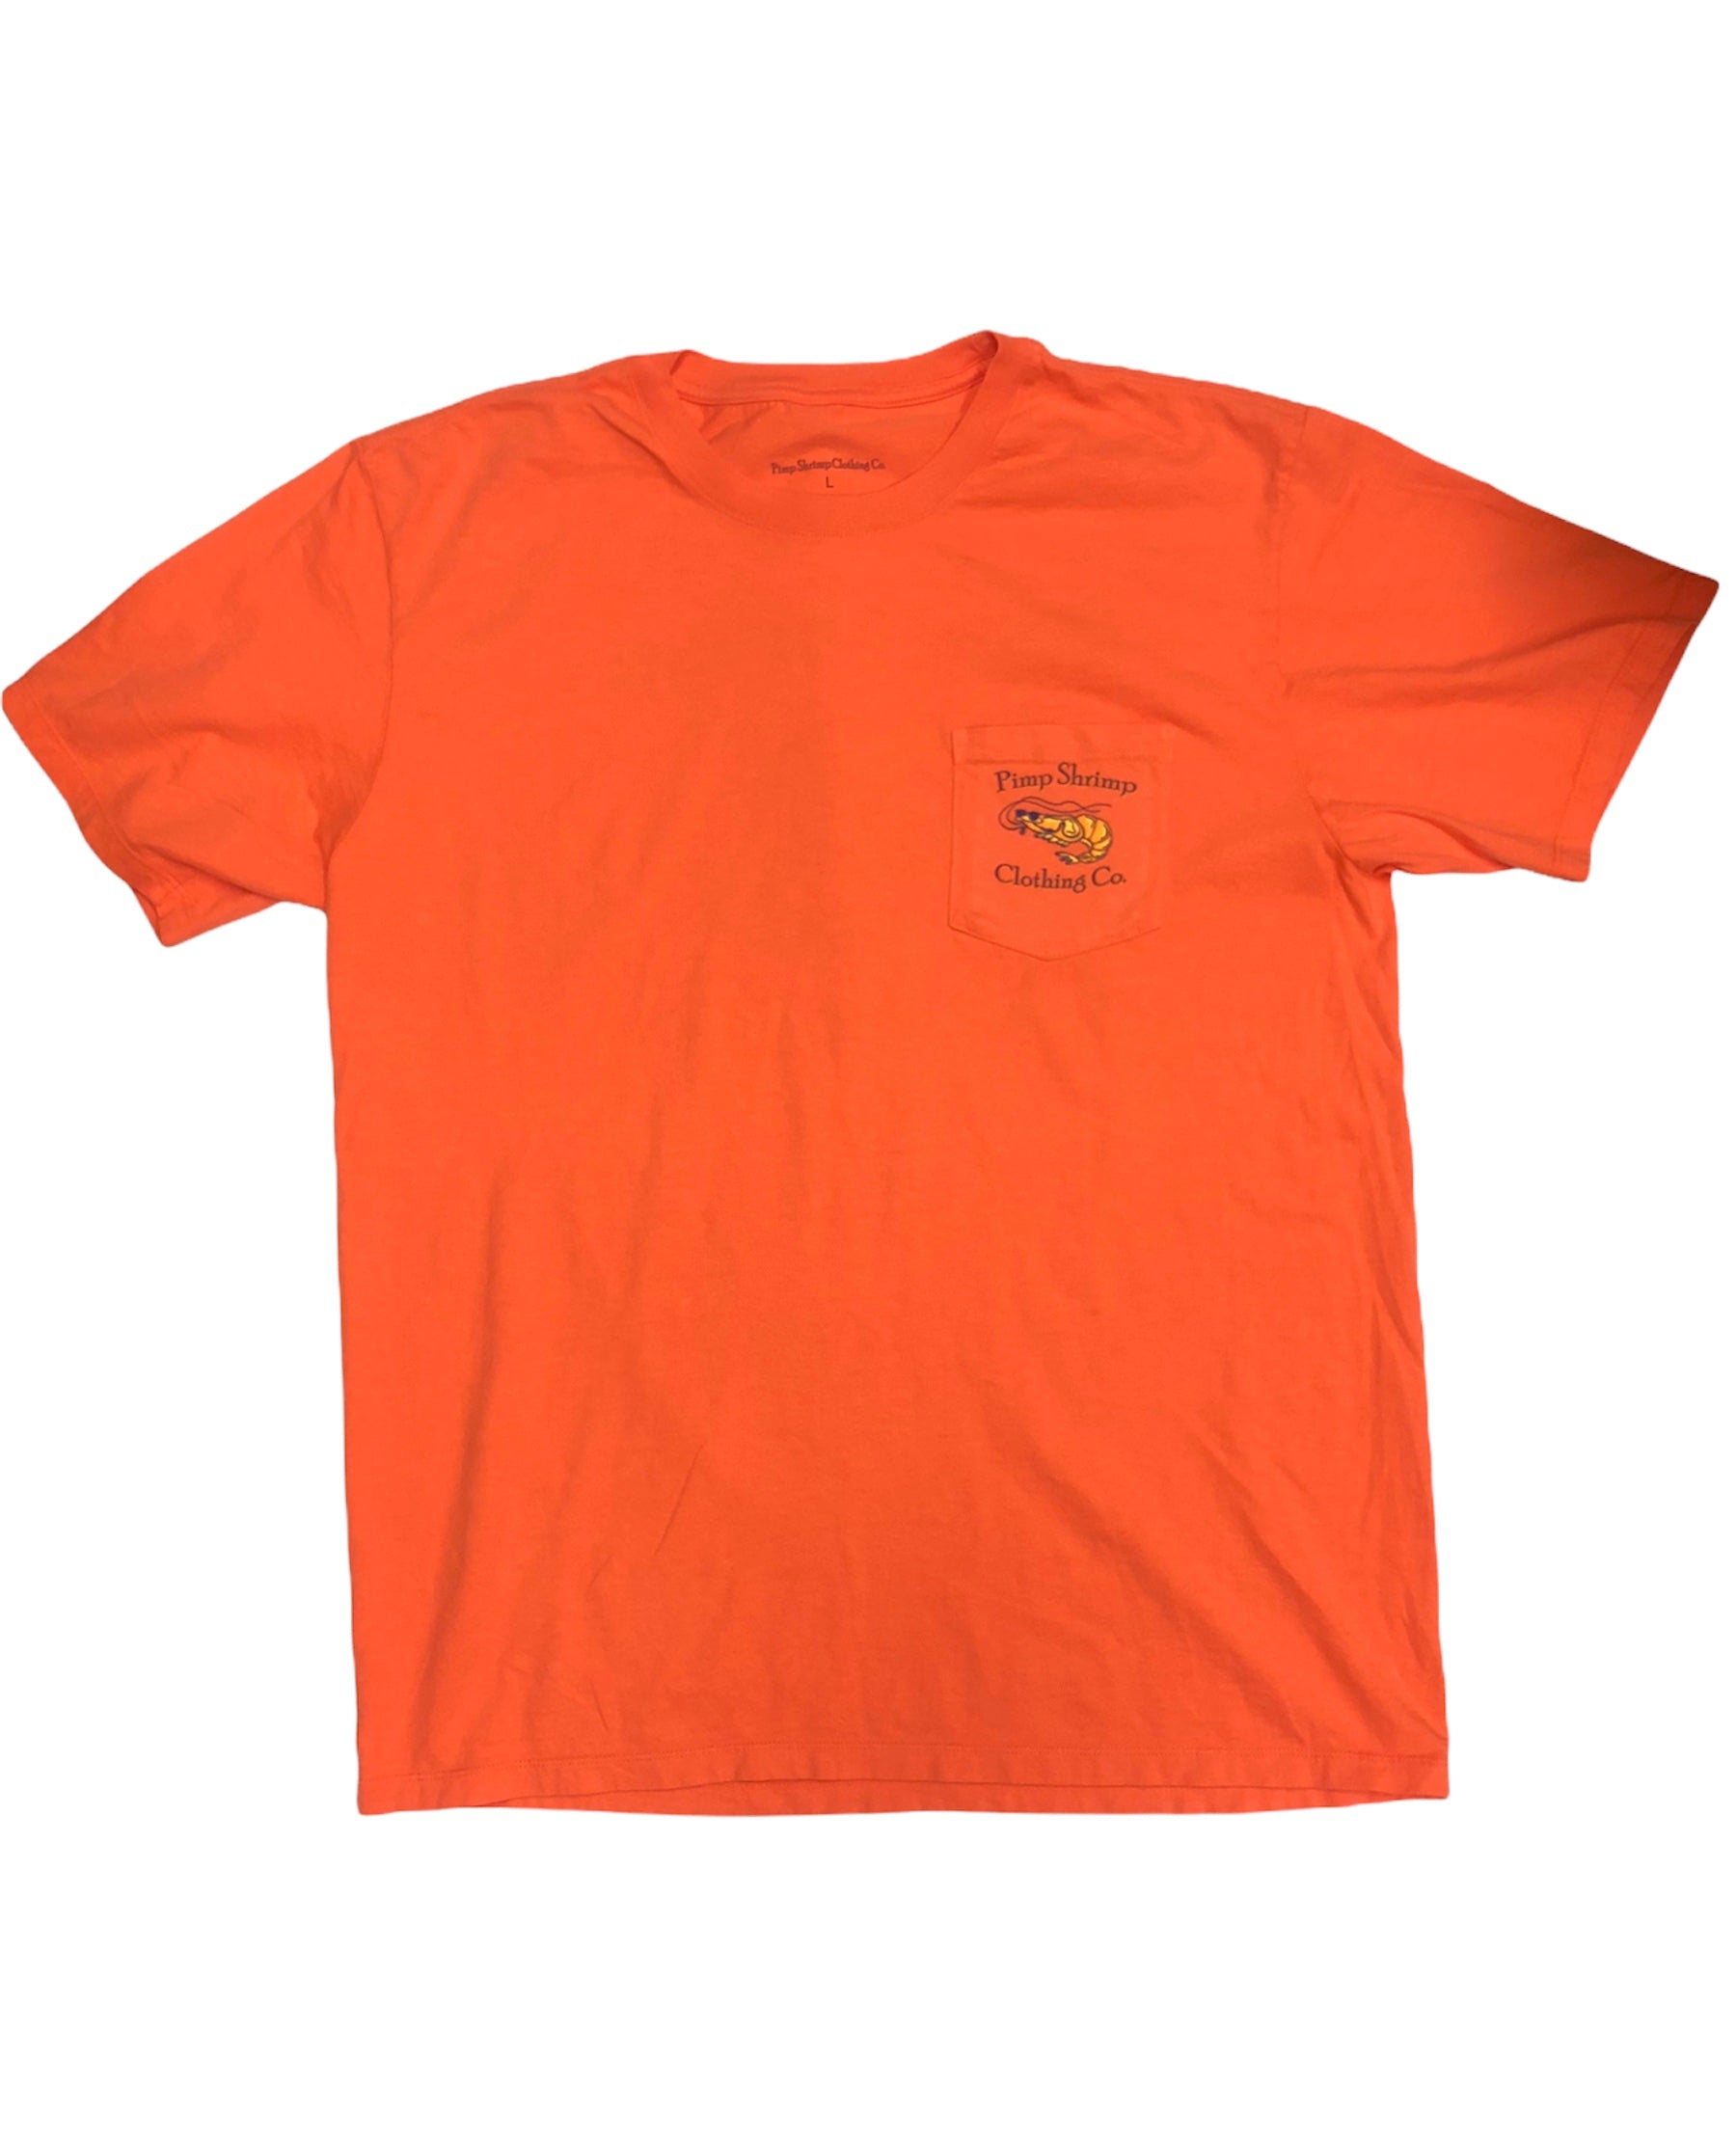 Short Sleeve Pocketed T-Shirts – Pimp Shrimp Clothing